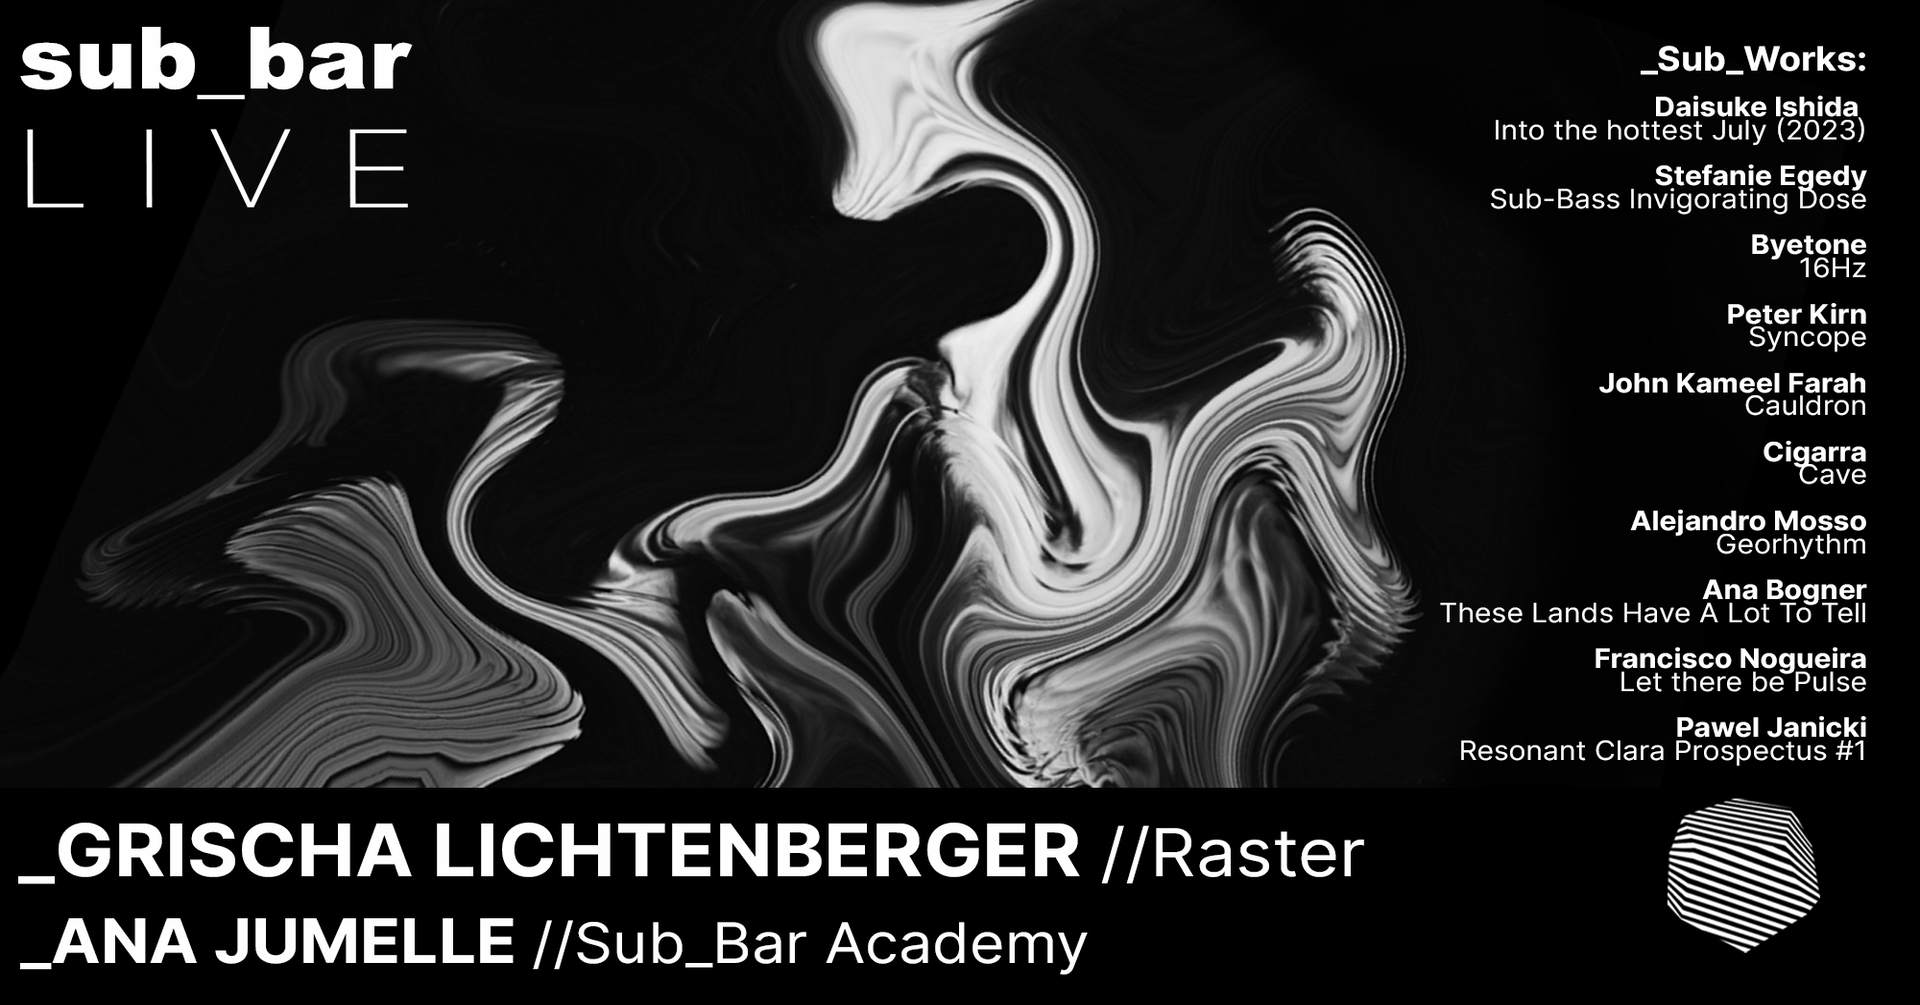 Sub_Bar LIVE with Grischa Lichtenberger & Ana Jumelle - フライヤー表